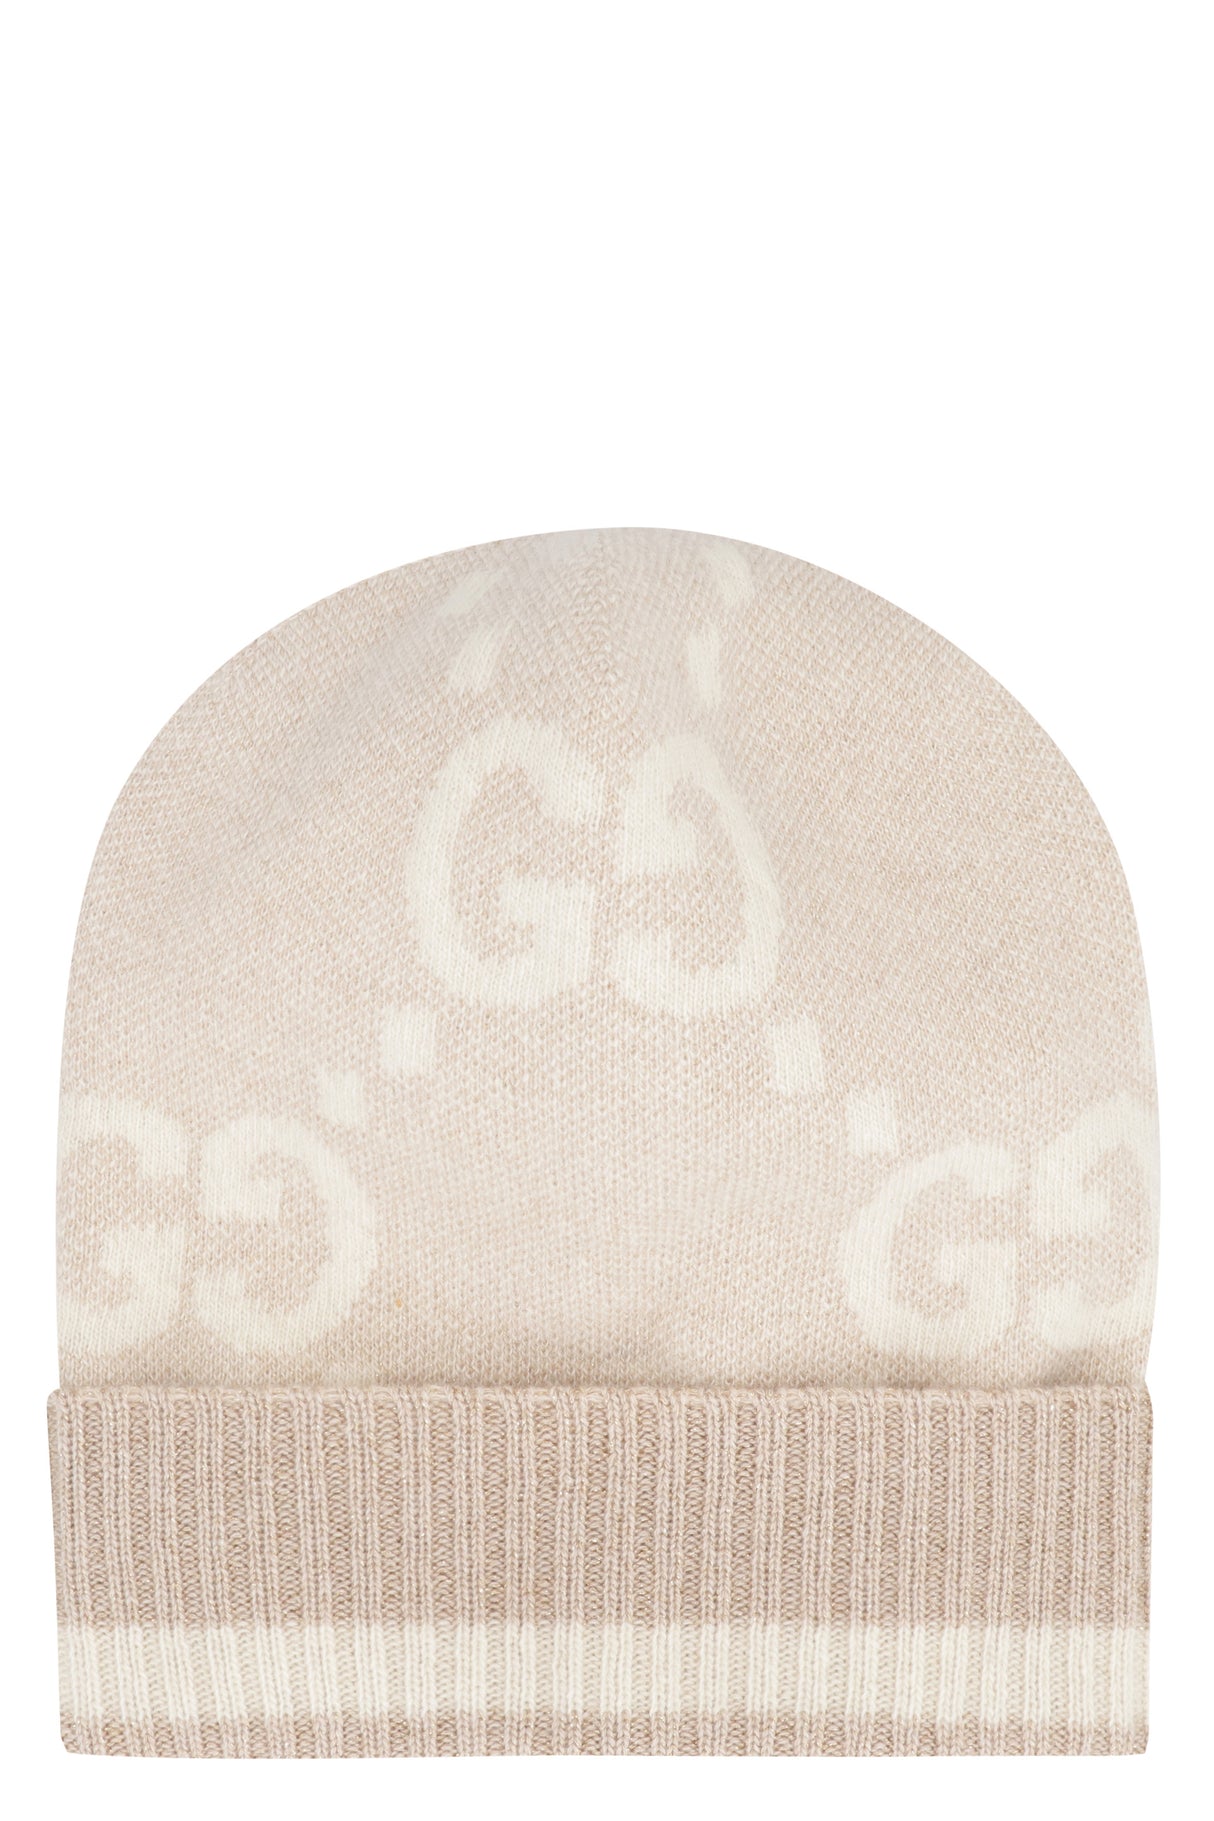 Mũ len cỡi tay đính logo GG tinh tế với chỉ kim vàng cho phụ nữ